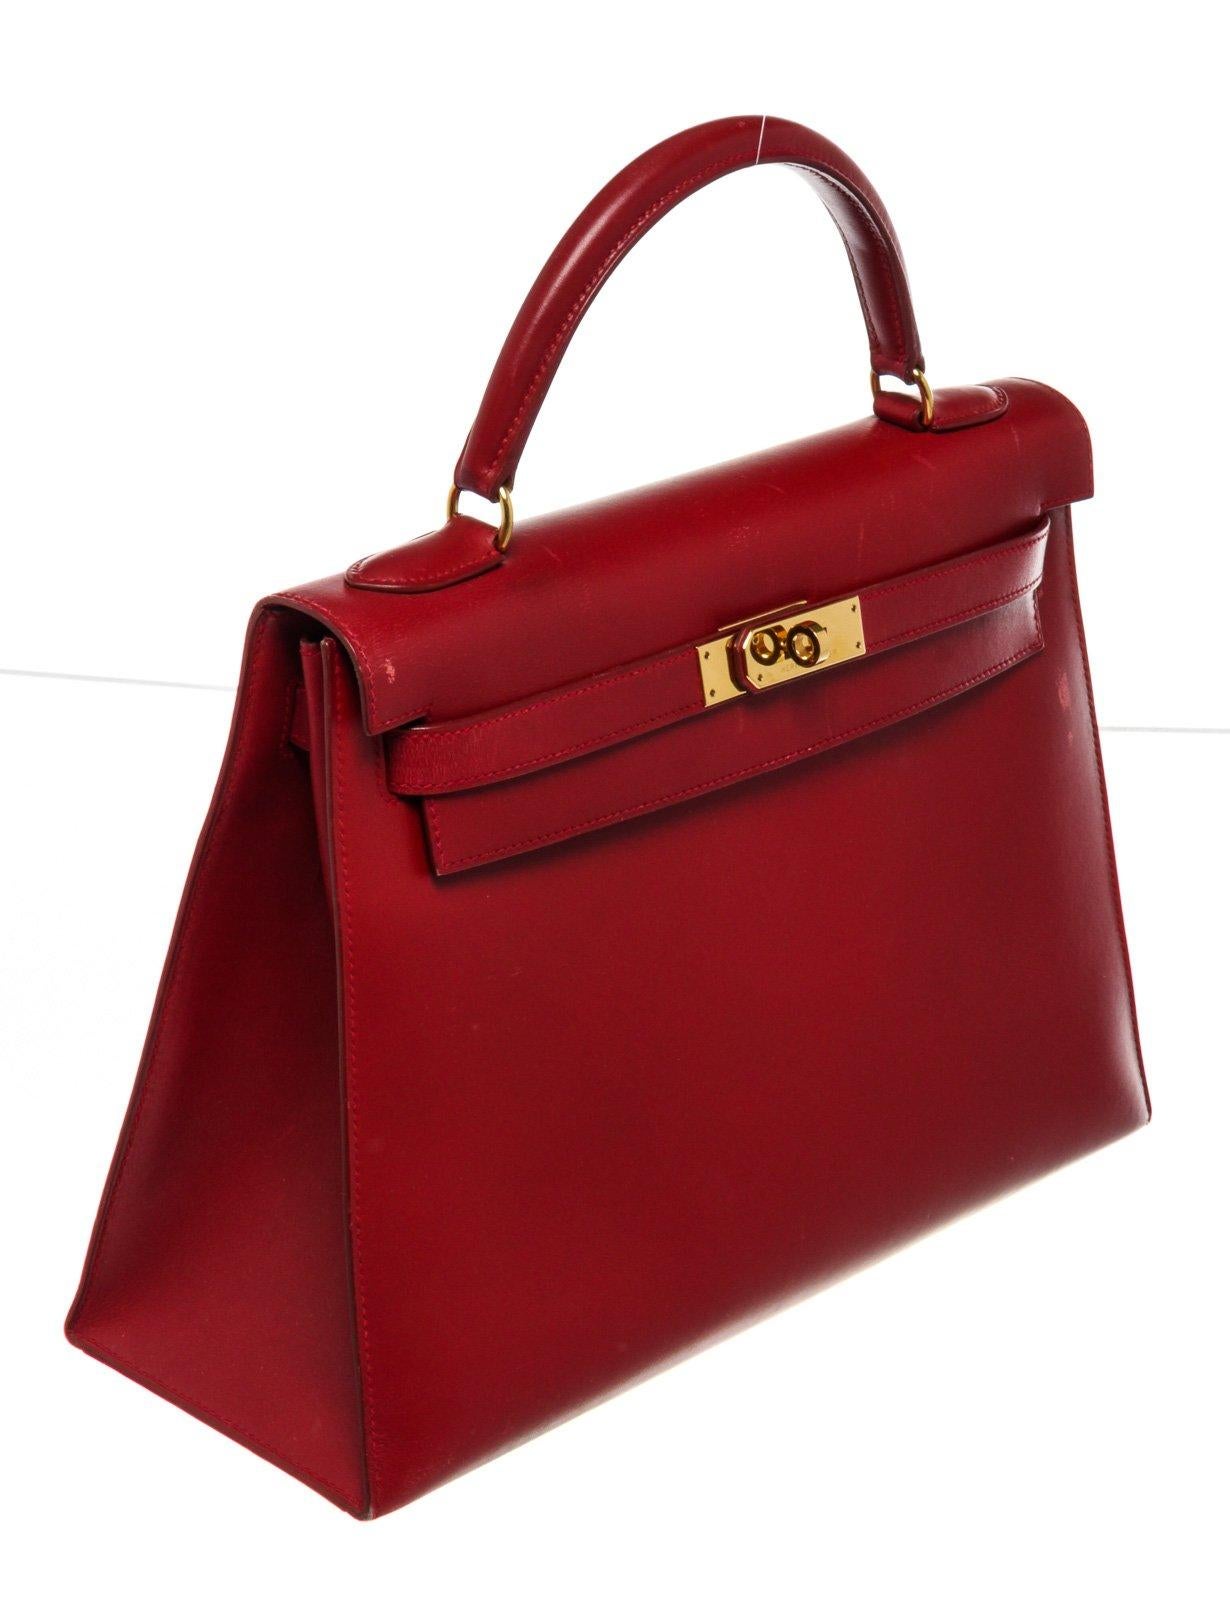 Hermes Red Leather Kelly 32cm Handbag For Sale 2